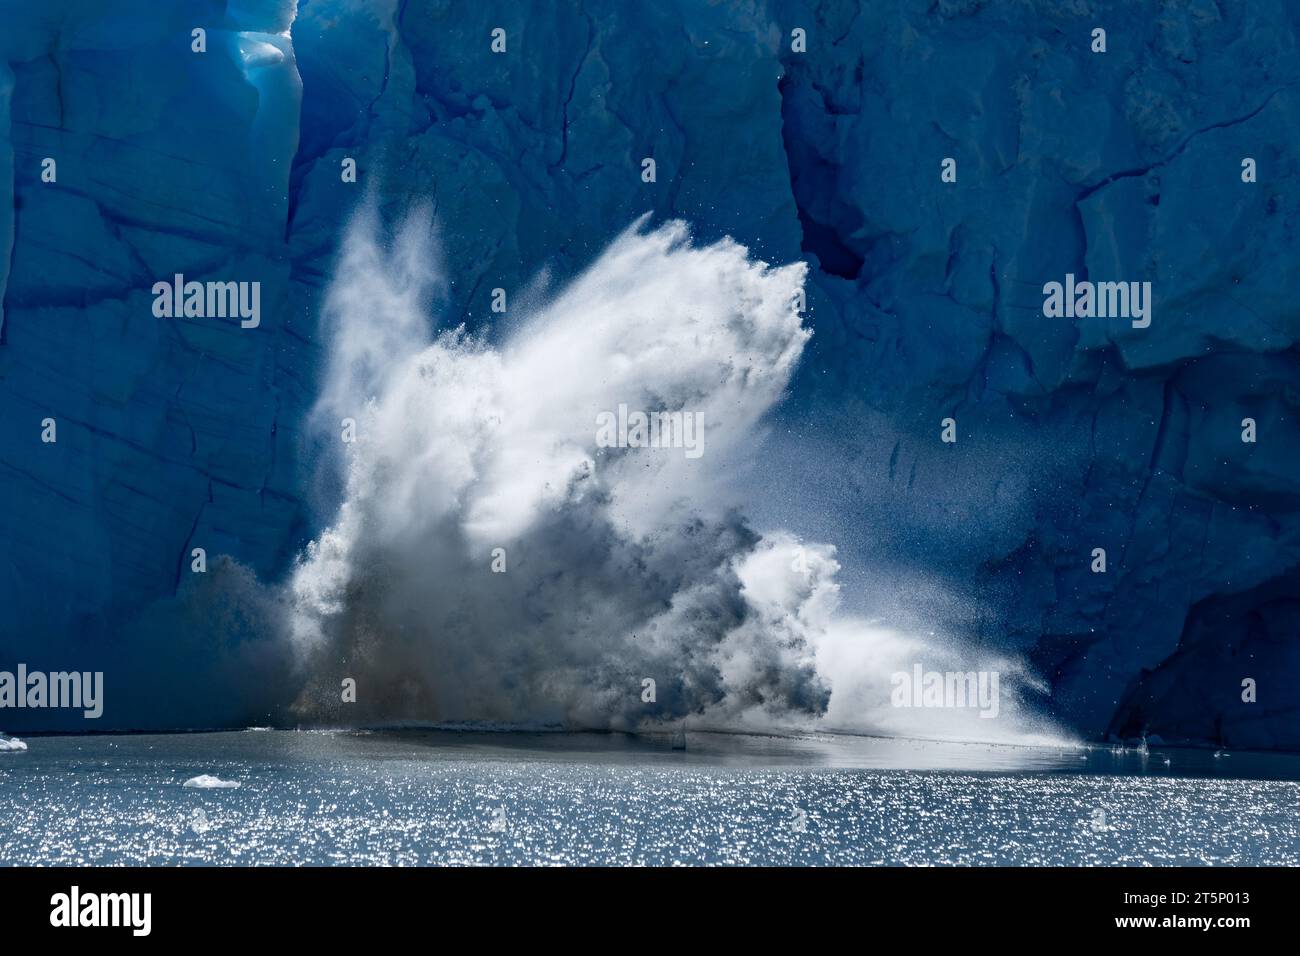 Un gros morceau de glace tombe du glacier Perito Moreno, en Argentine Banque D'Images